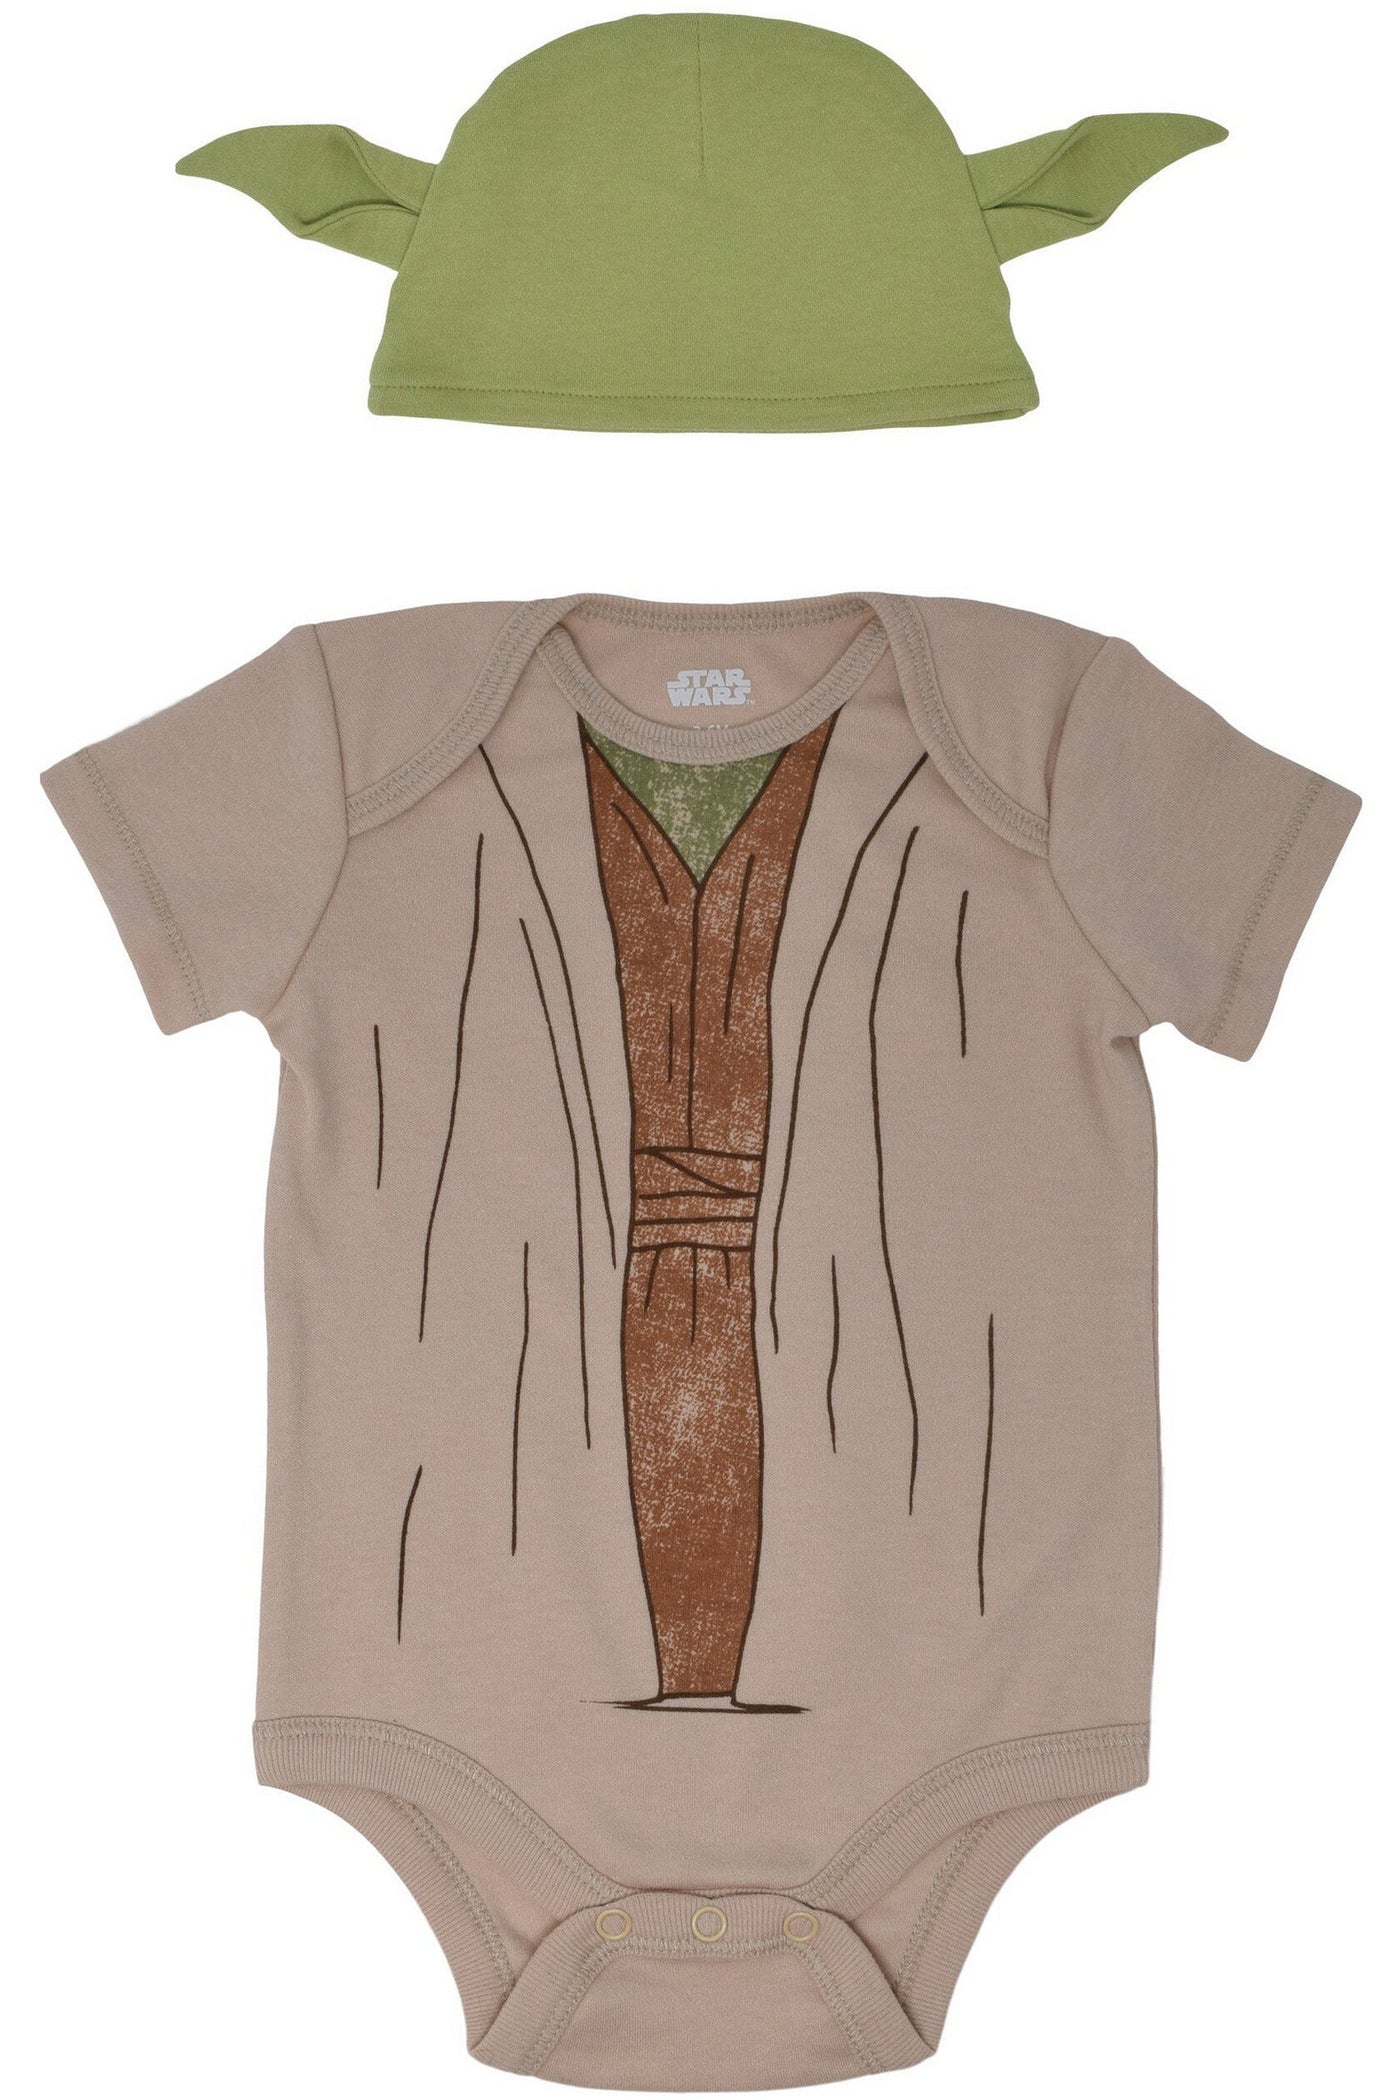 Disfraz de bebé yoda/ disfraz de grogu/Yoda/capa de bebé Yoda